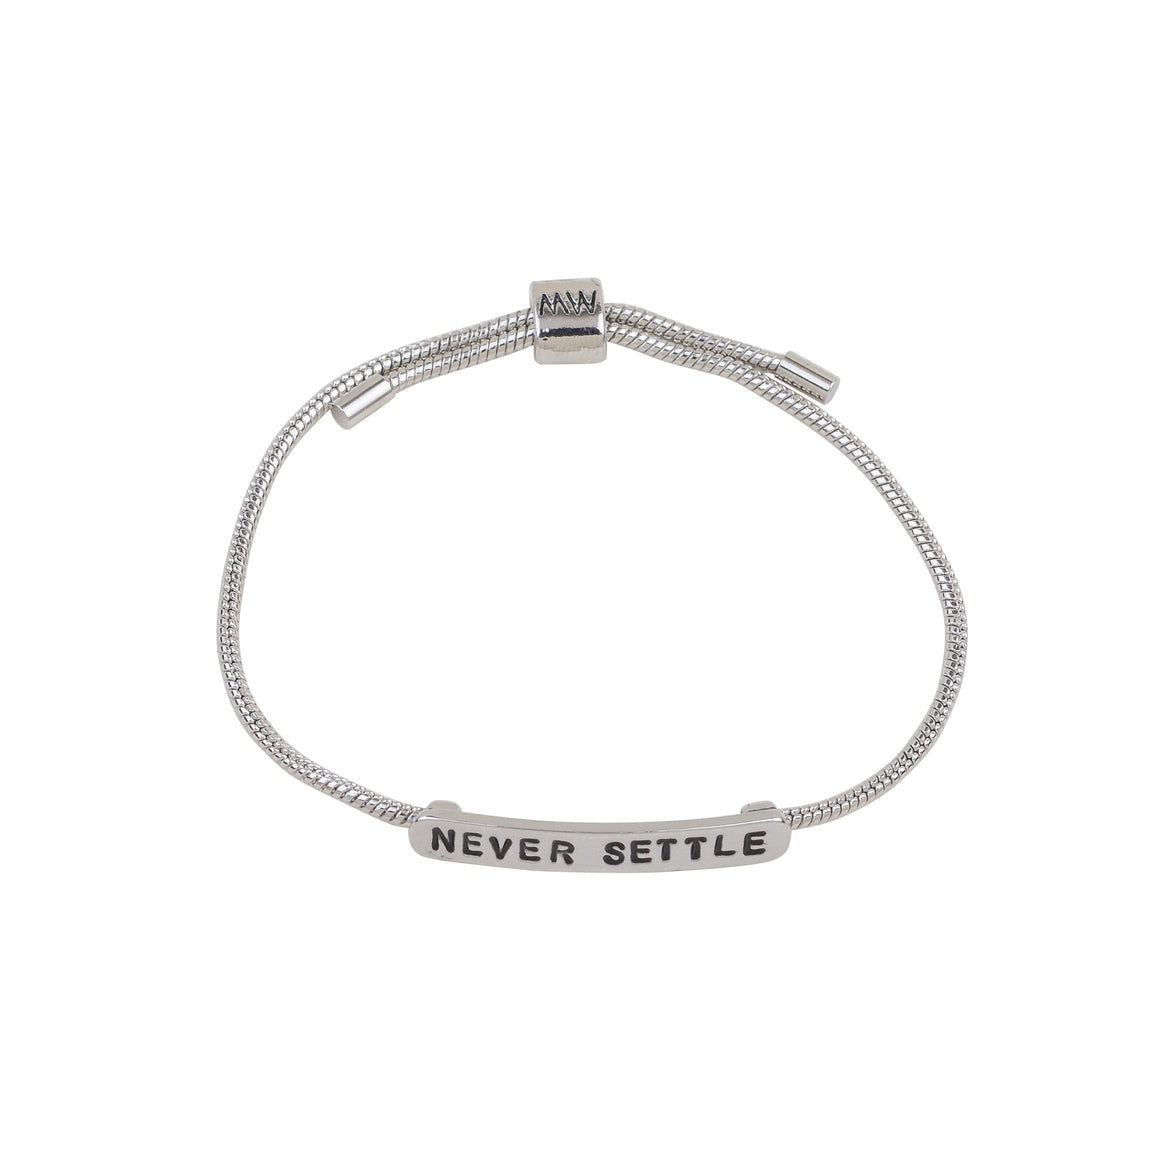 2121 - Never Settle Bracelet